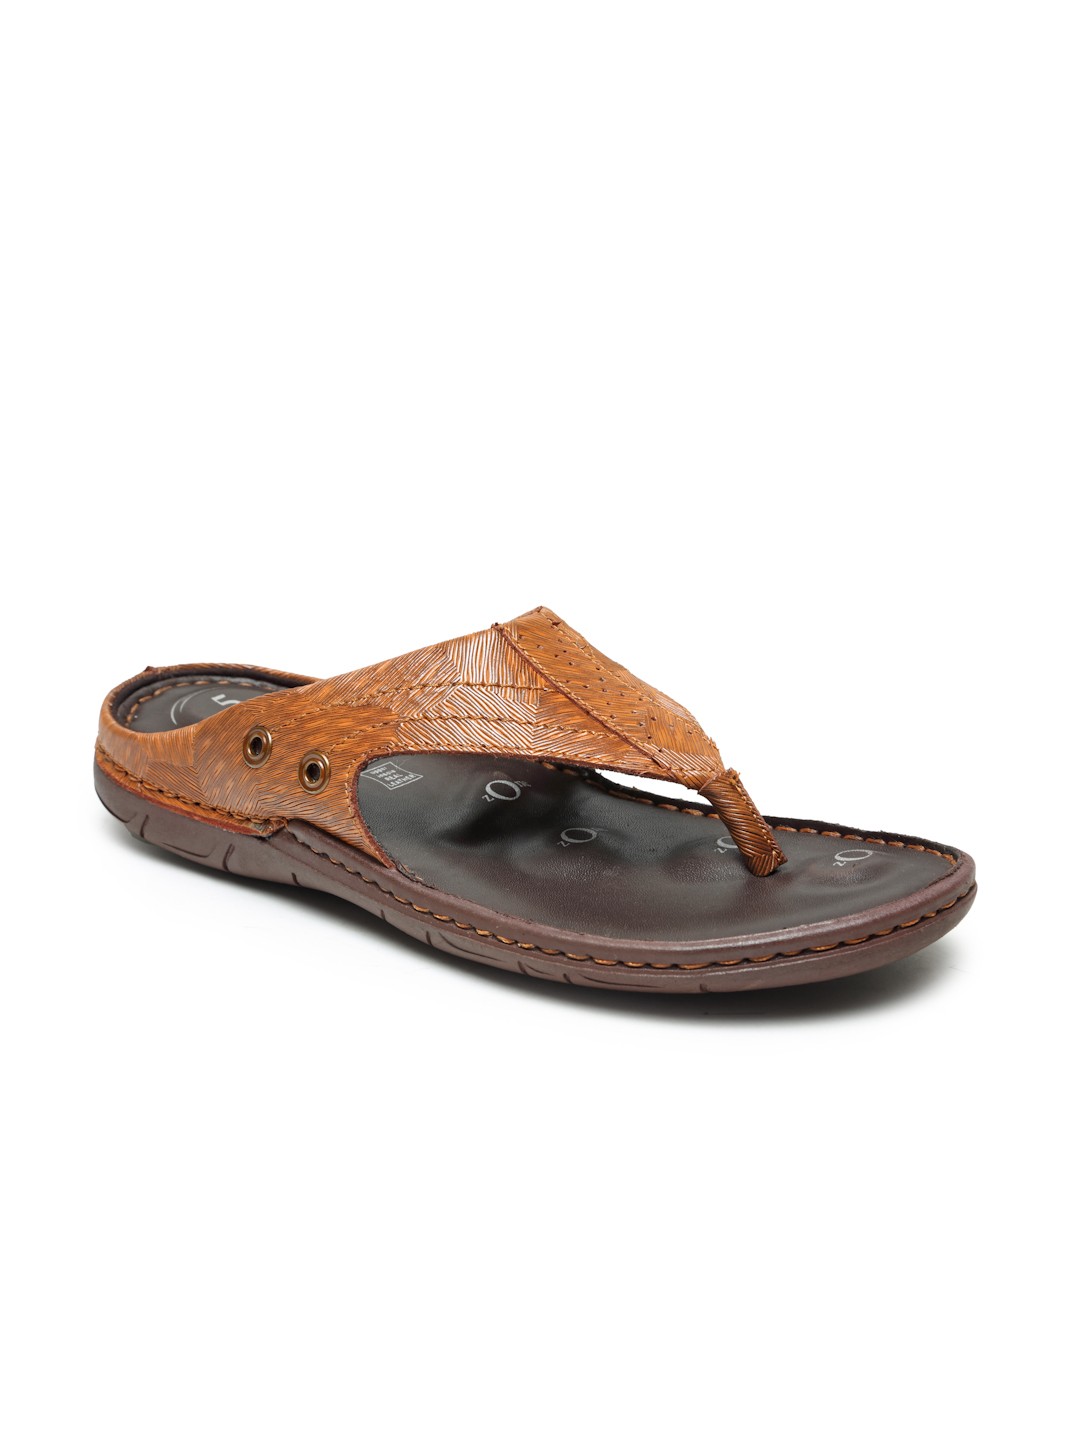 Buy Von Wellx Germany Comfort Men's Tan Slippers Alex Online in Noida